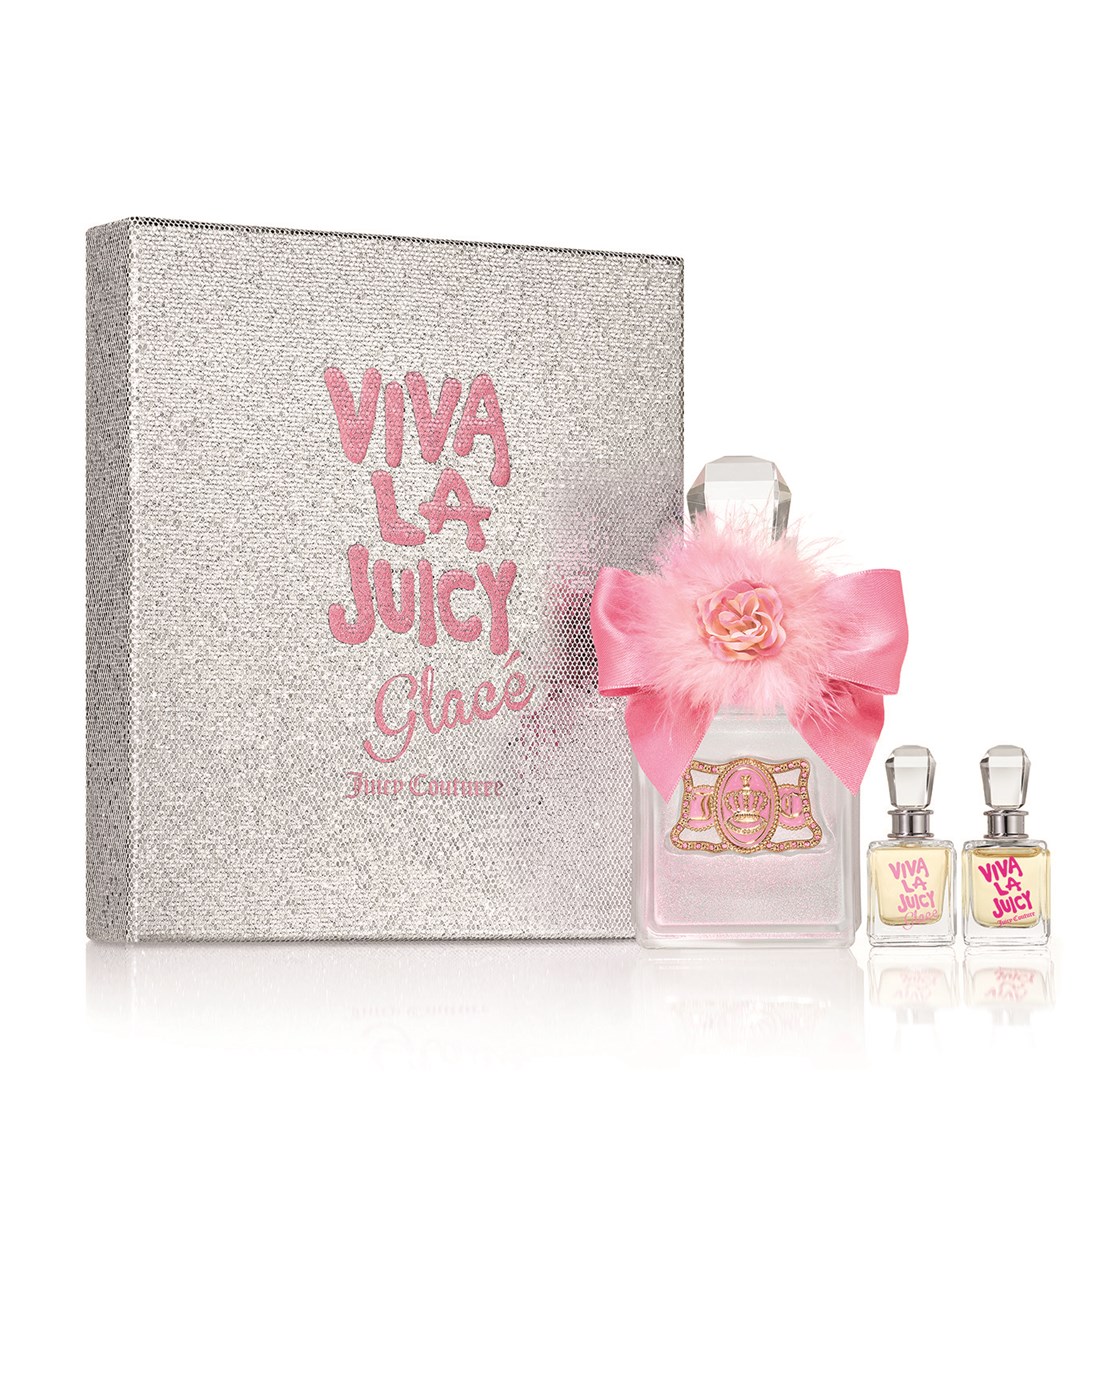 Juicy Couture Viva La Glacé 1.7 oz Gift Set